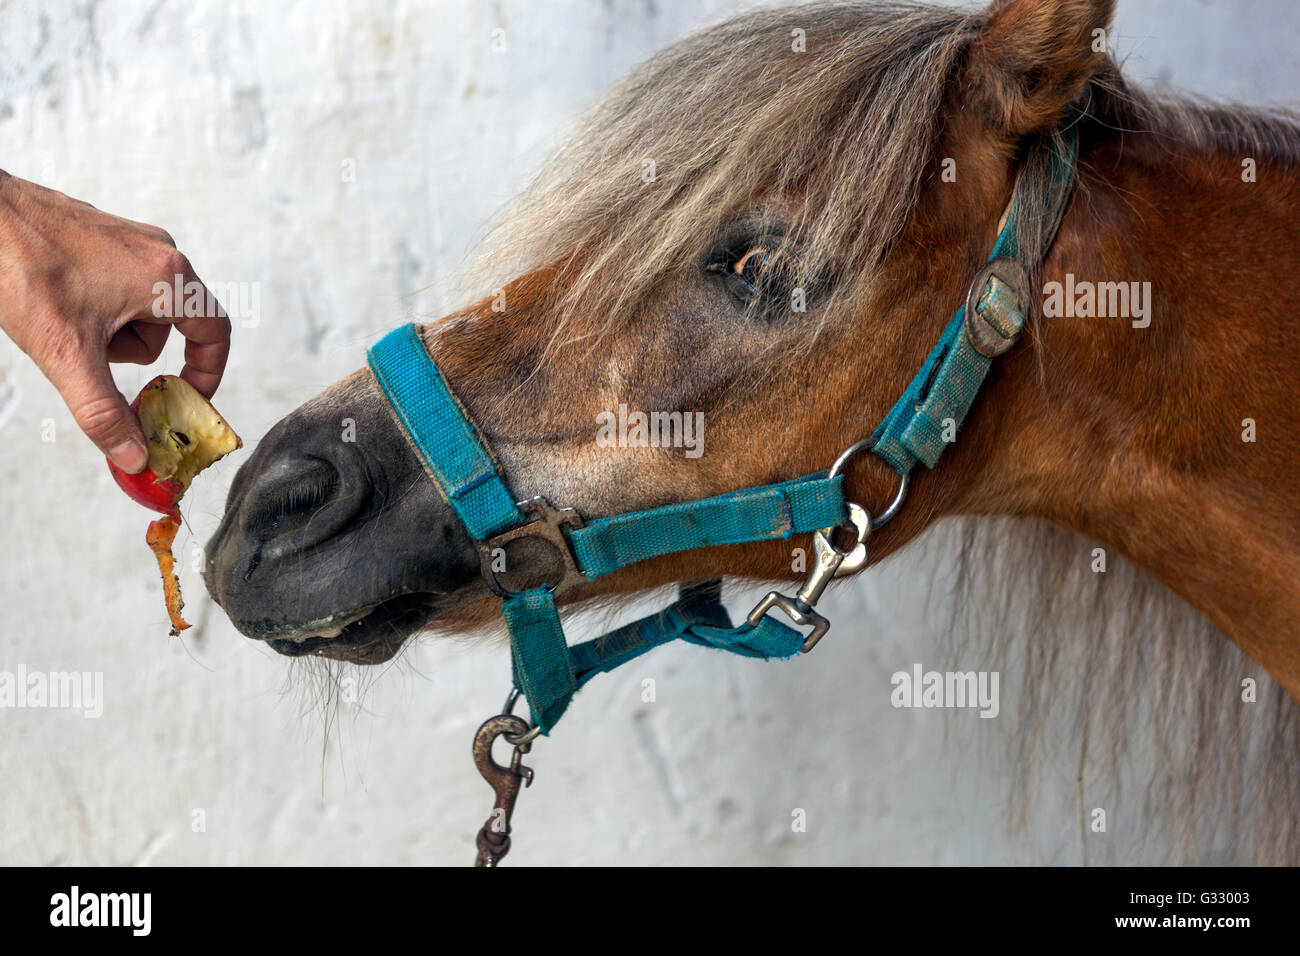 Main avec une pomme pour un poney, femme nourrissant un cheval, bride de cheval Banque D'Images